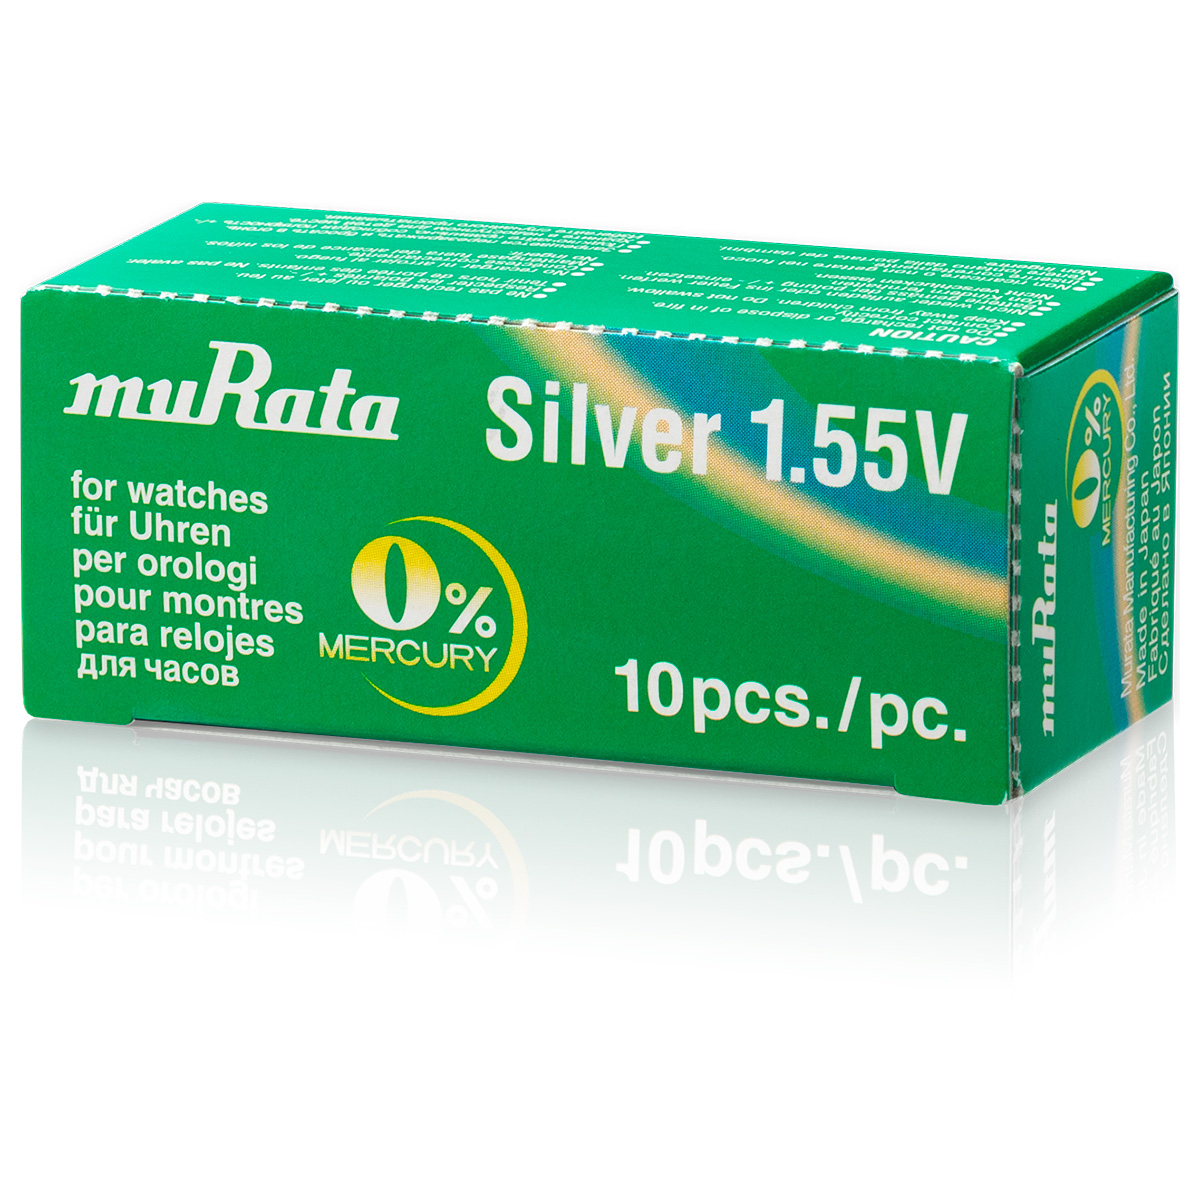 Murata 379 zilveroxide knoopcel batterij, SR521SW, 0% kwik, Low drain